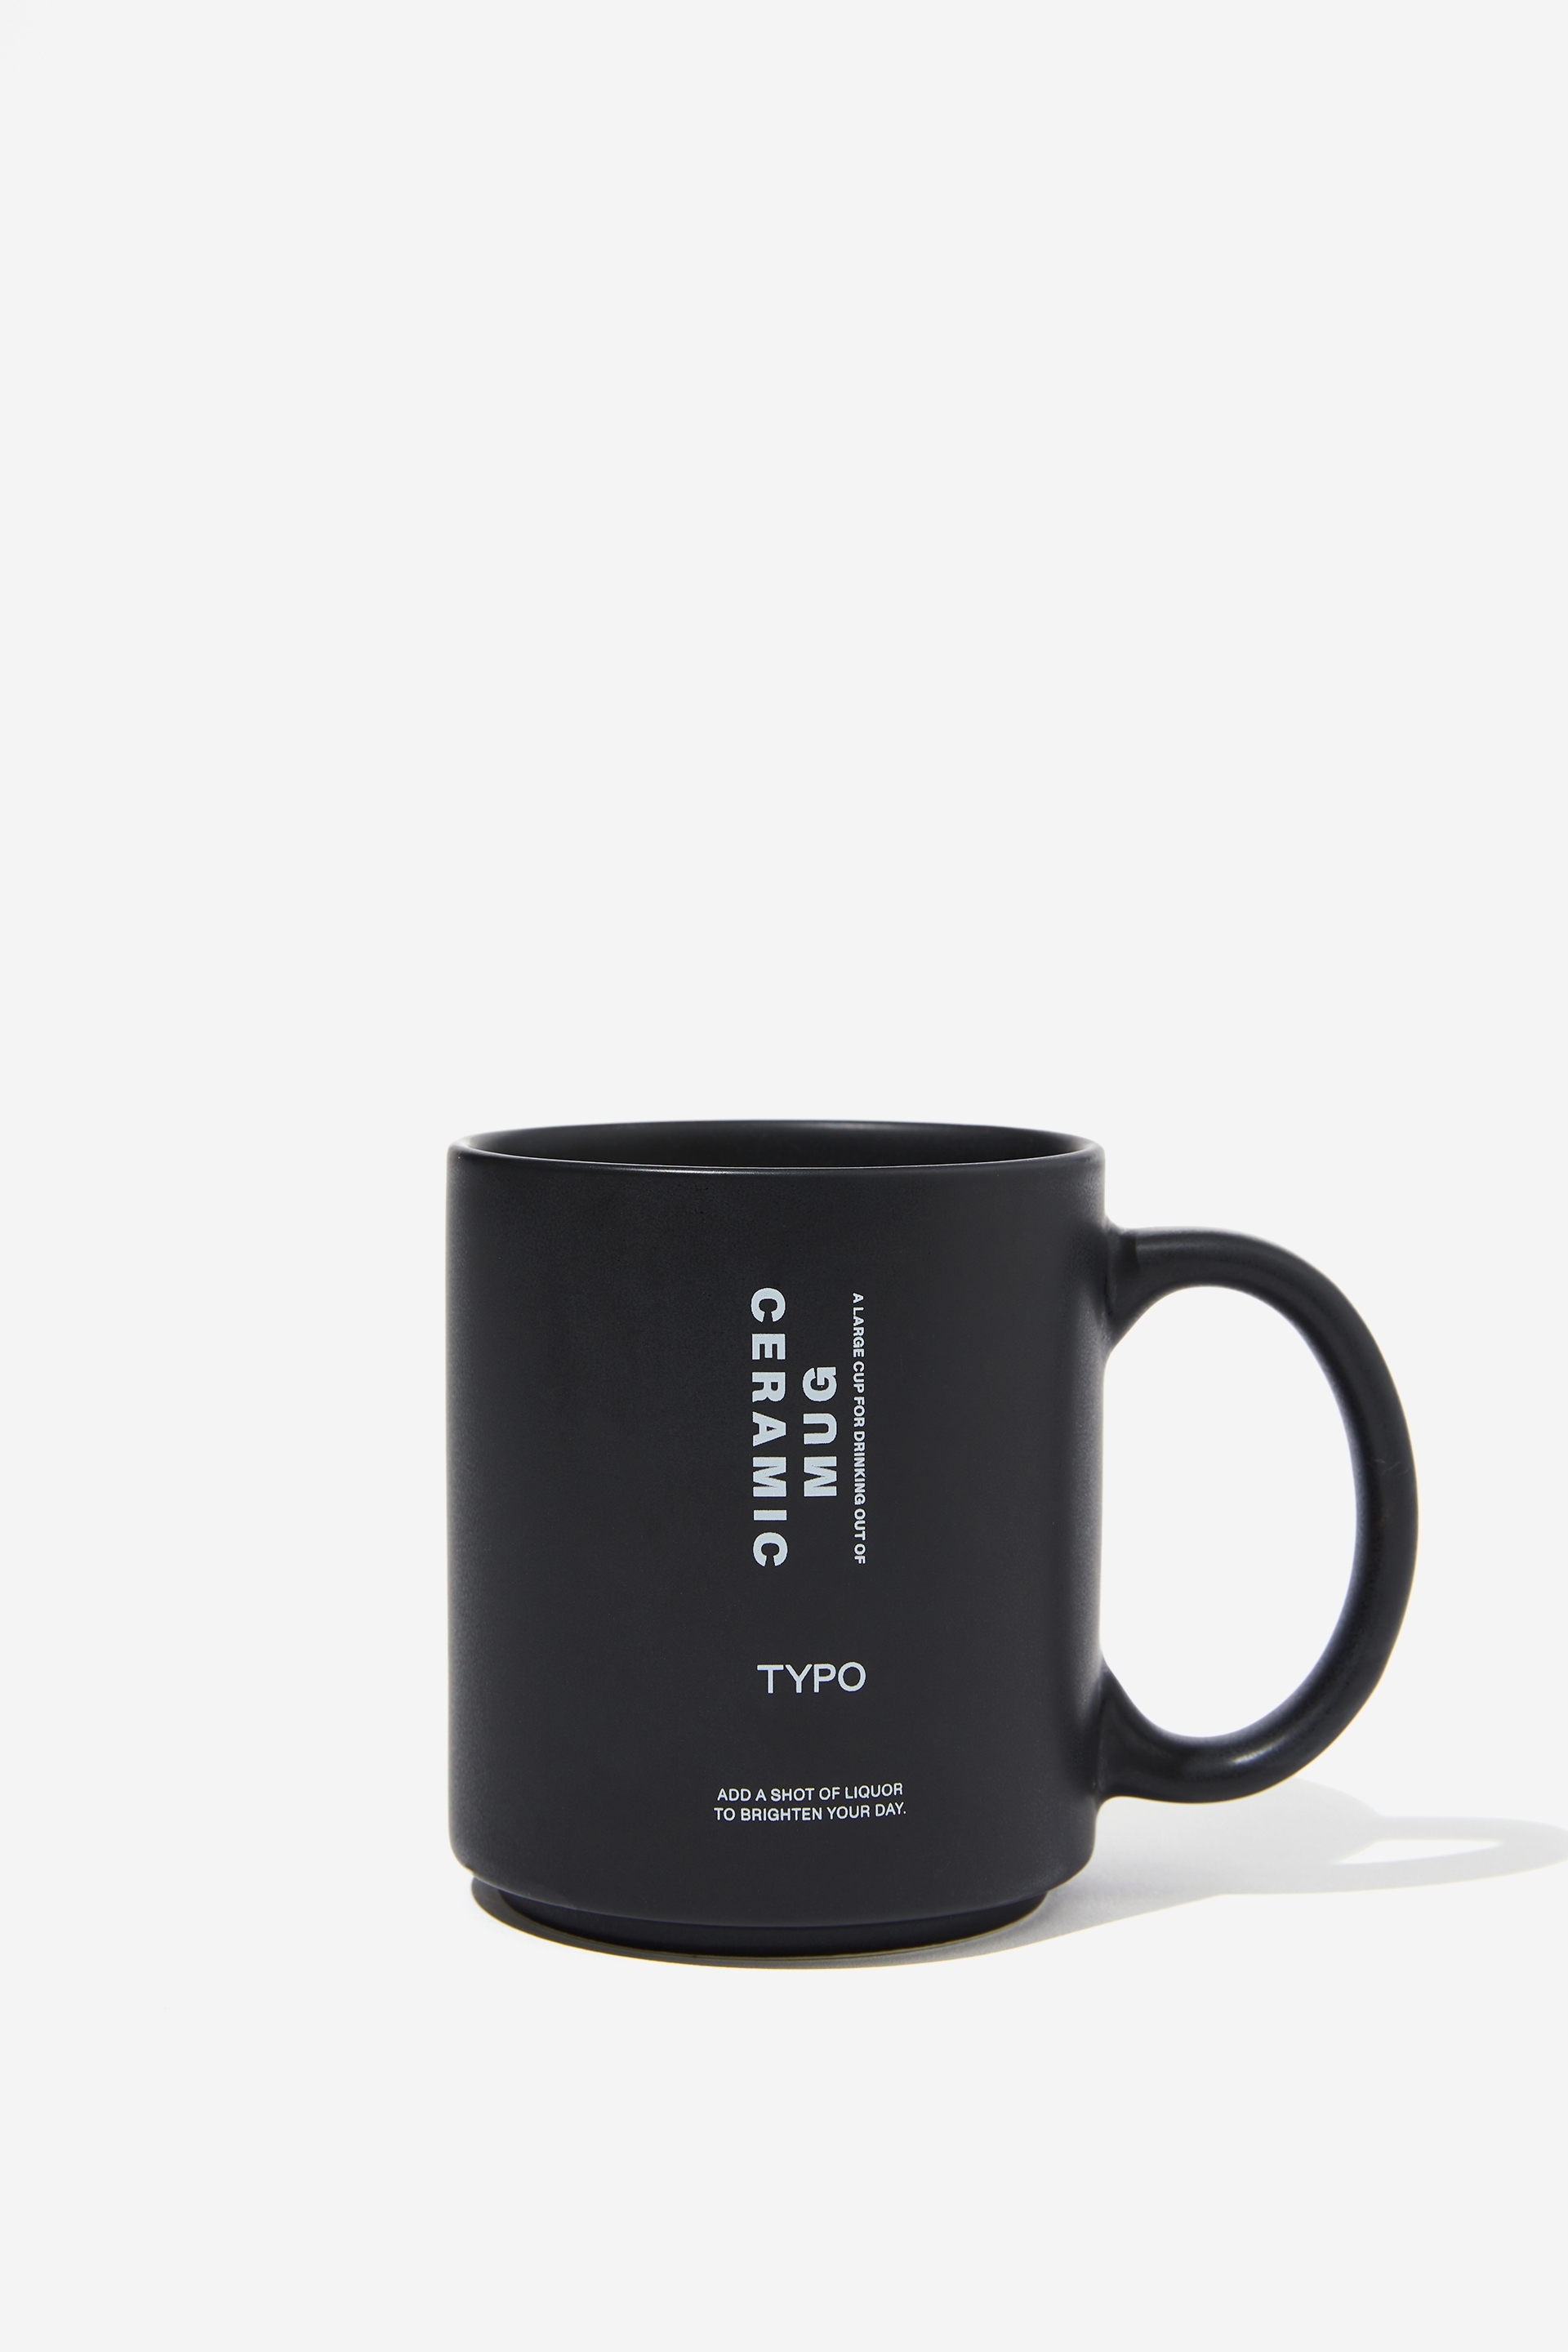 Typo - Daily Mug - Ceramic mug vt!